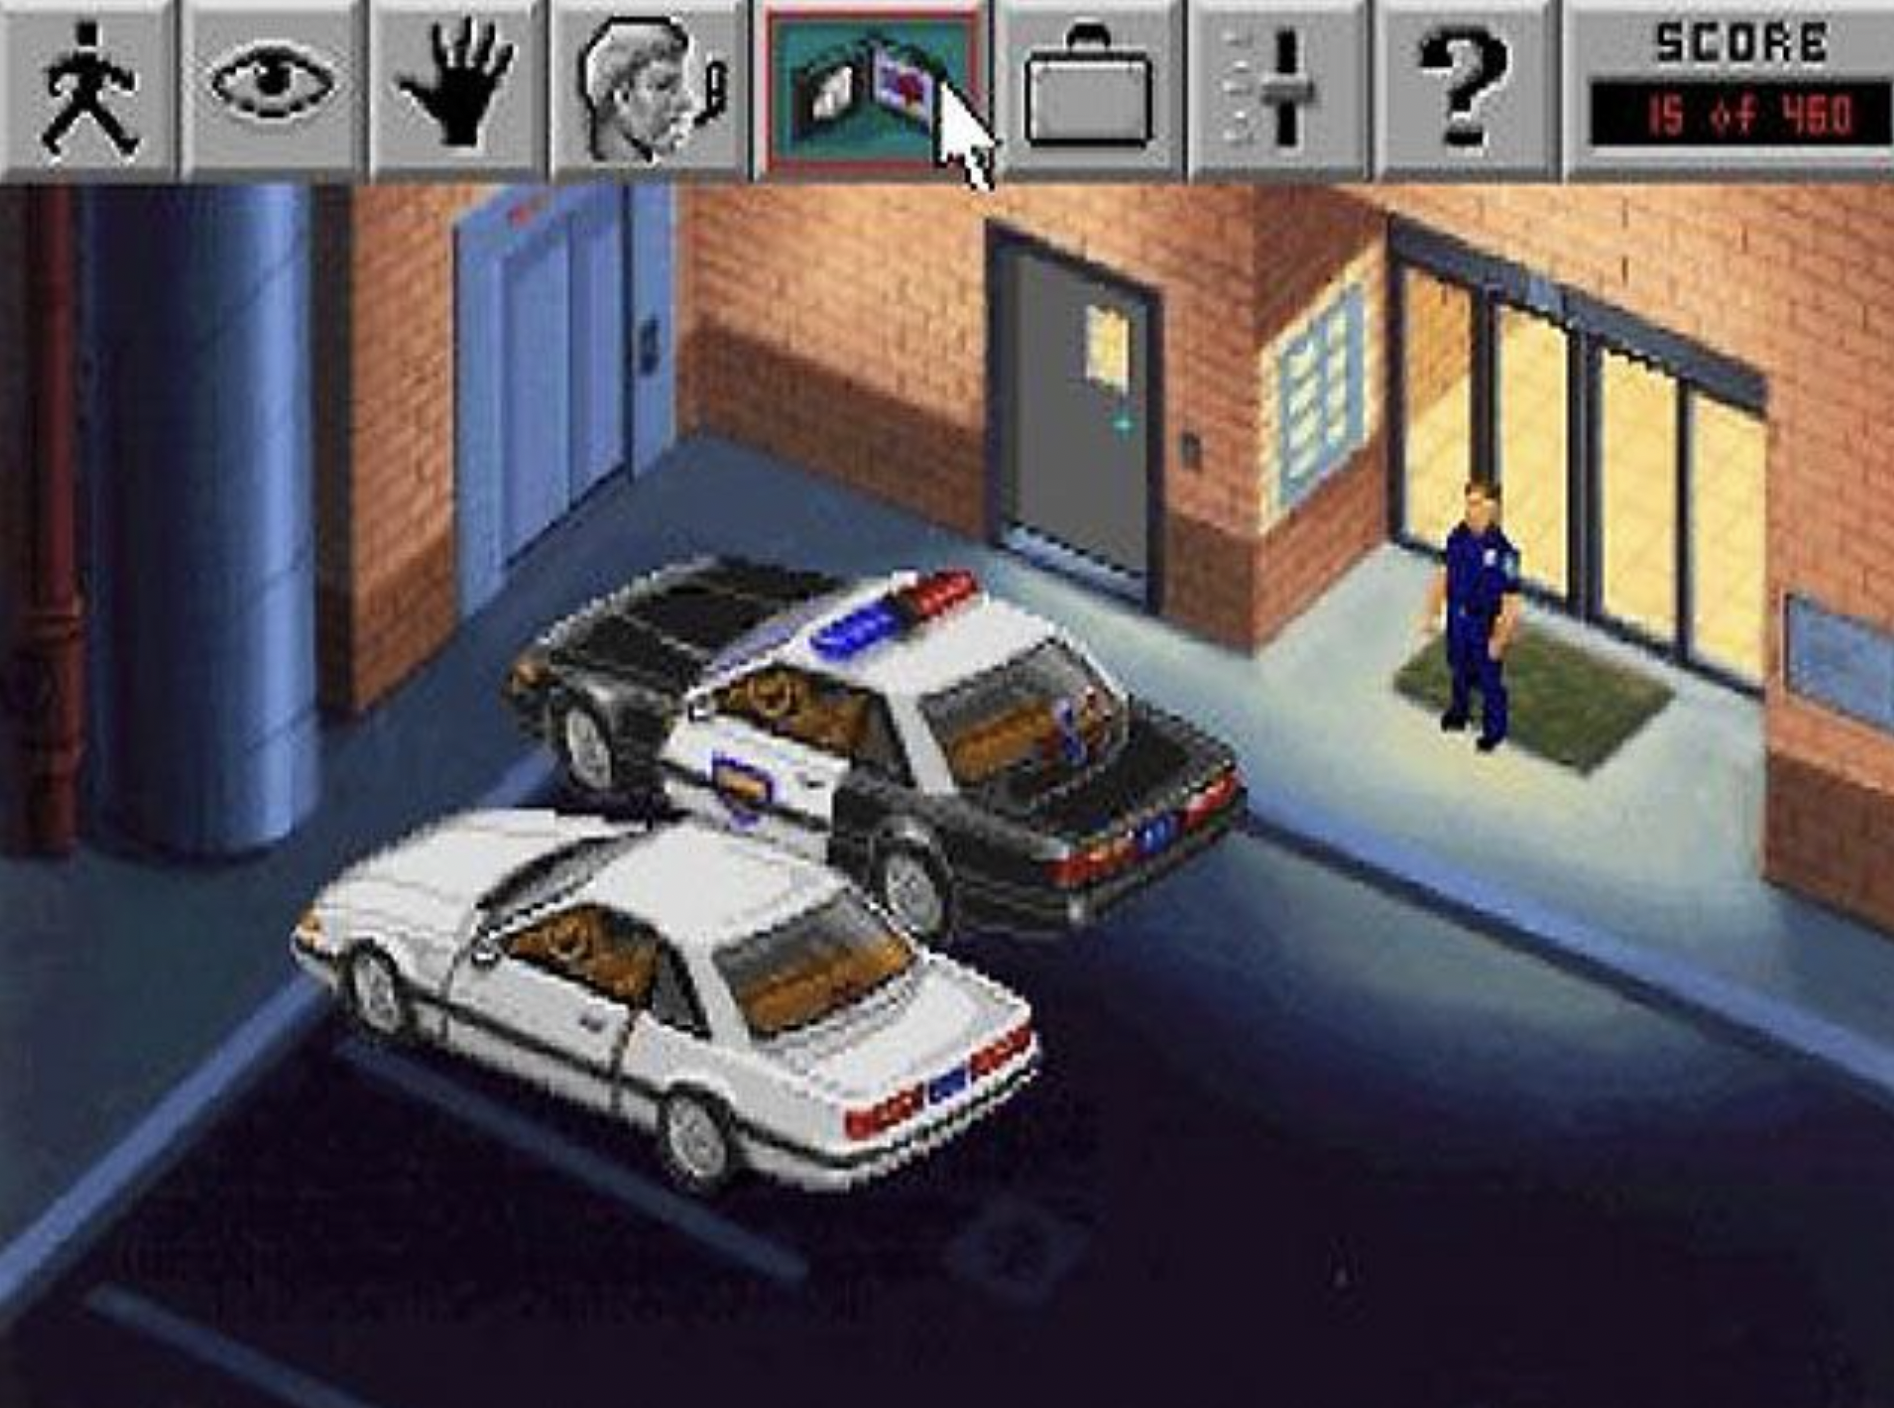 Игры 90 2000. Police Quest 3 игра. Компьютерные игры девяностых. Игры 90-х годов. Компьютерные игры 90-х годов.